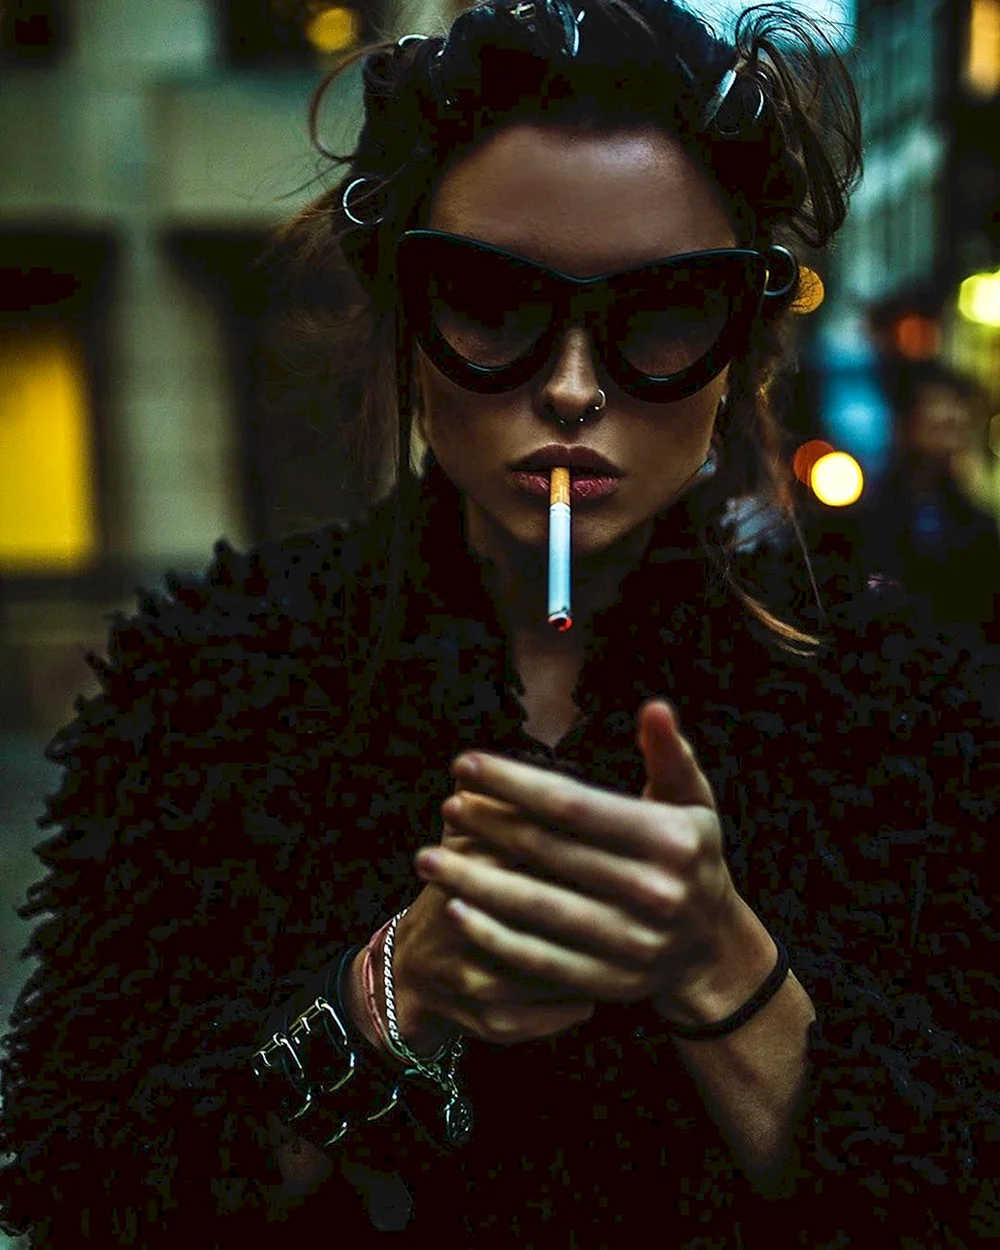 Woman cigarette